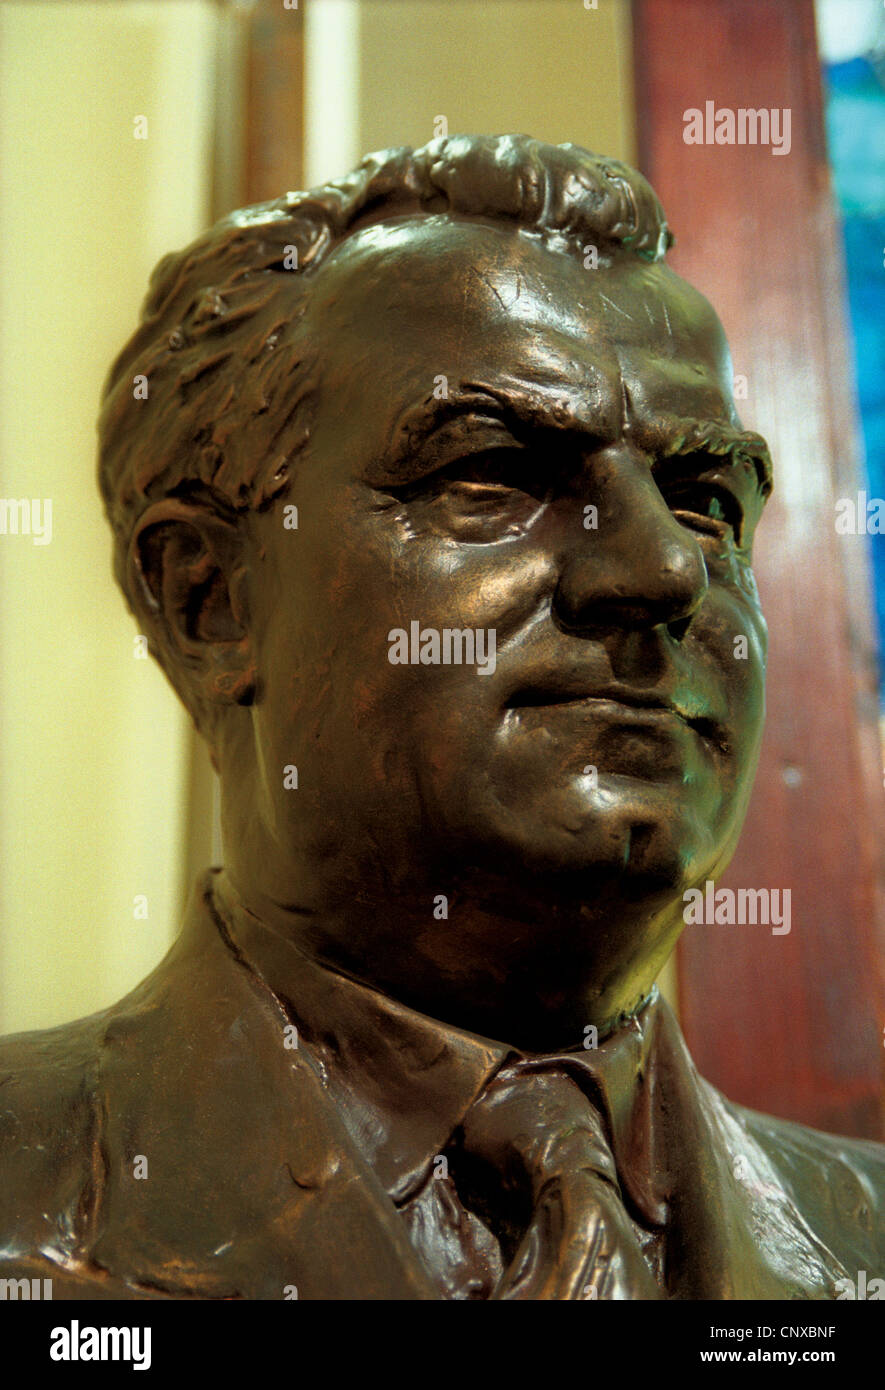 Büste des tschechoslowakischen Präsidenten Klement Gottwald in das Museum des Kommunismus in Prag, Tschechien. Stockfoto